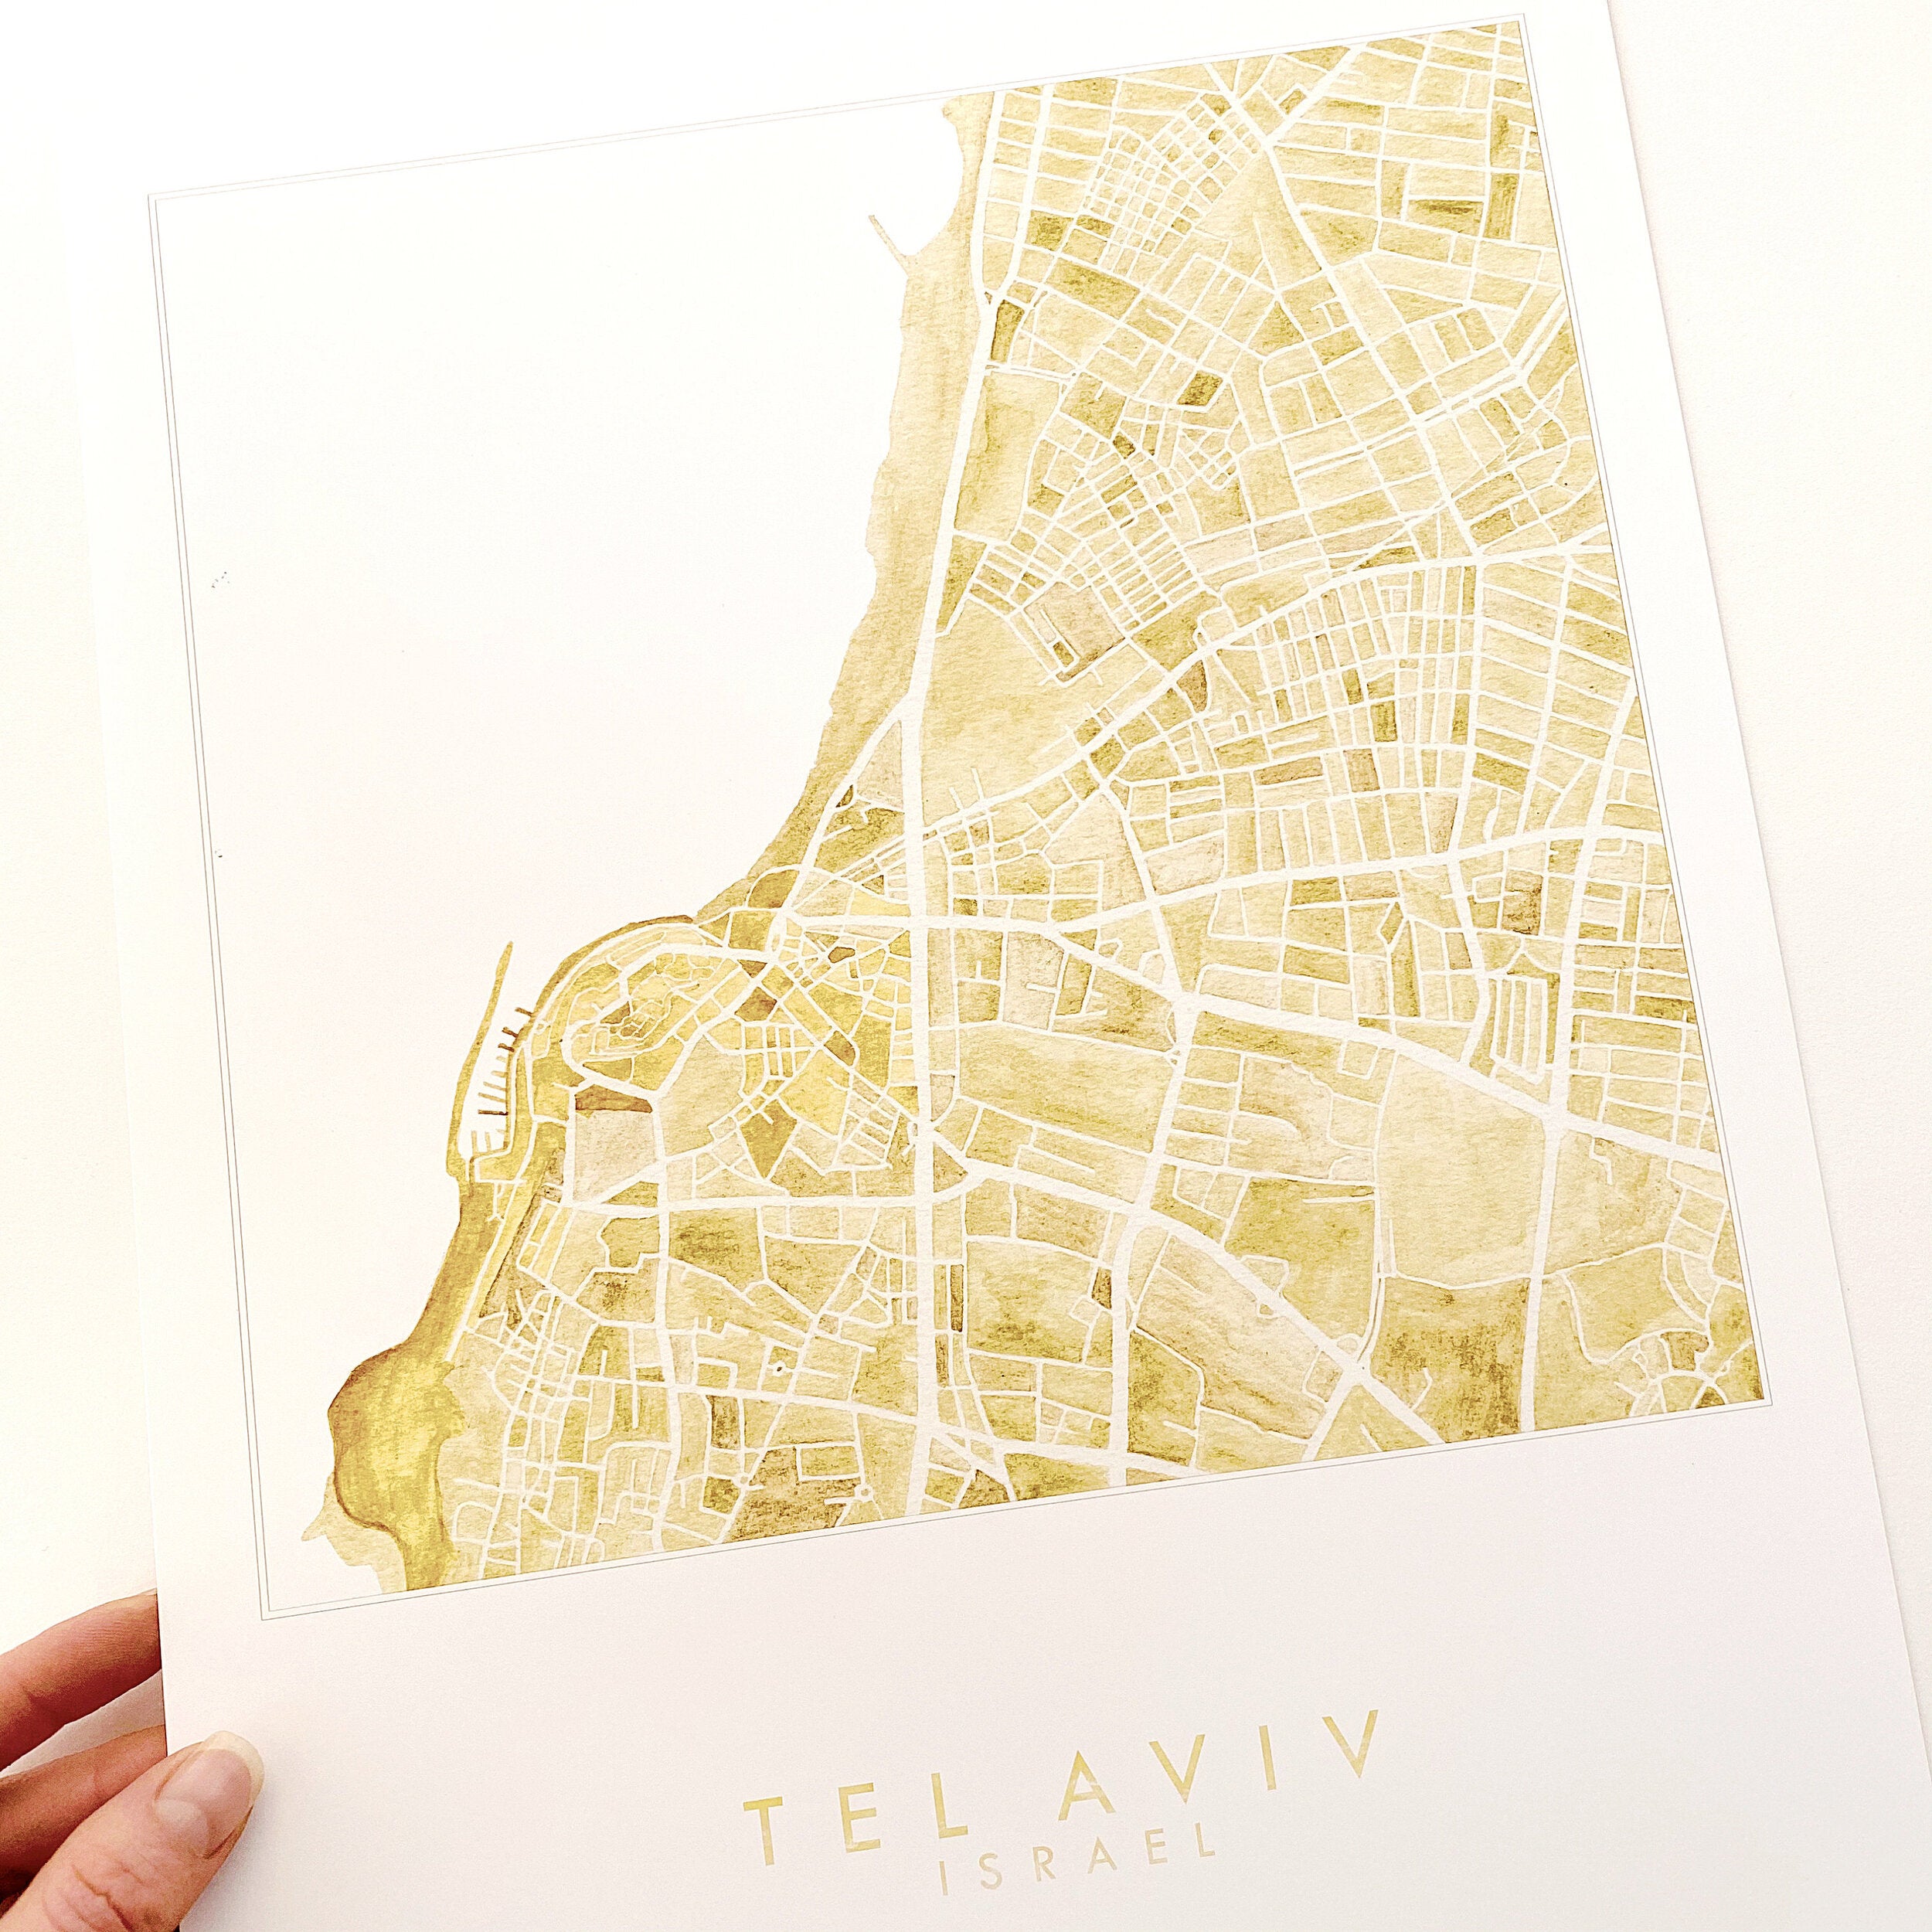 TEL AVIV Yafo Jaffa Israel Watercolor City Blocks Map: PRINT